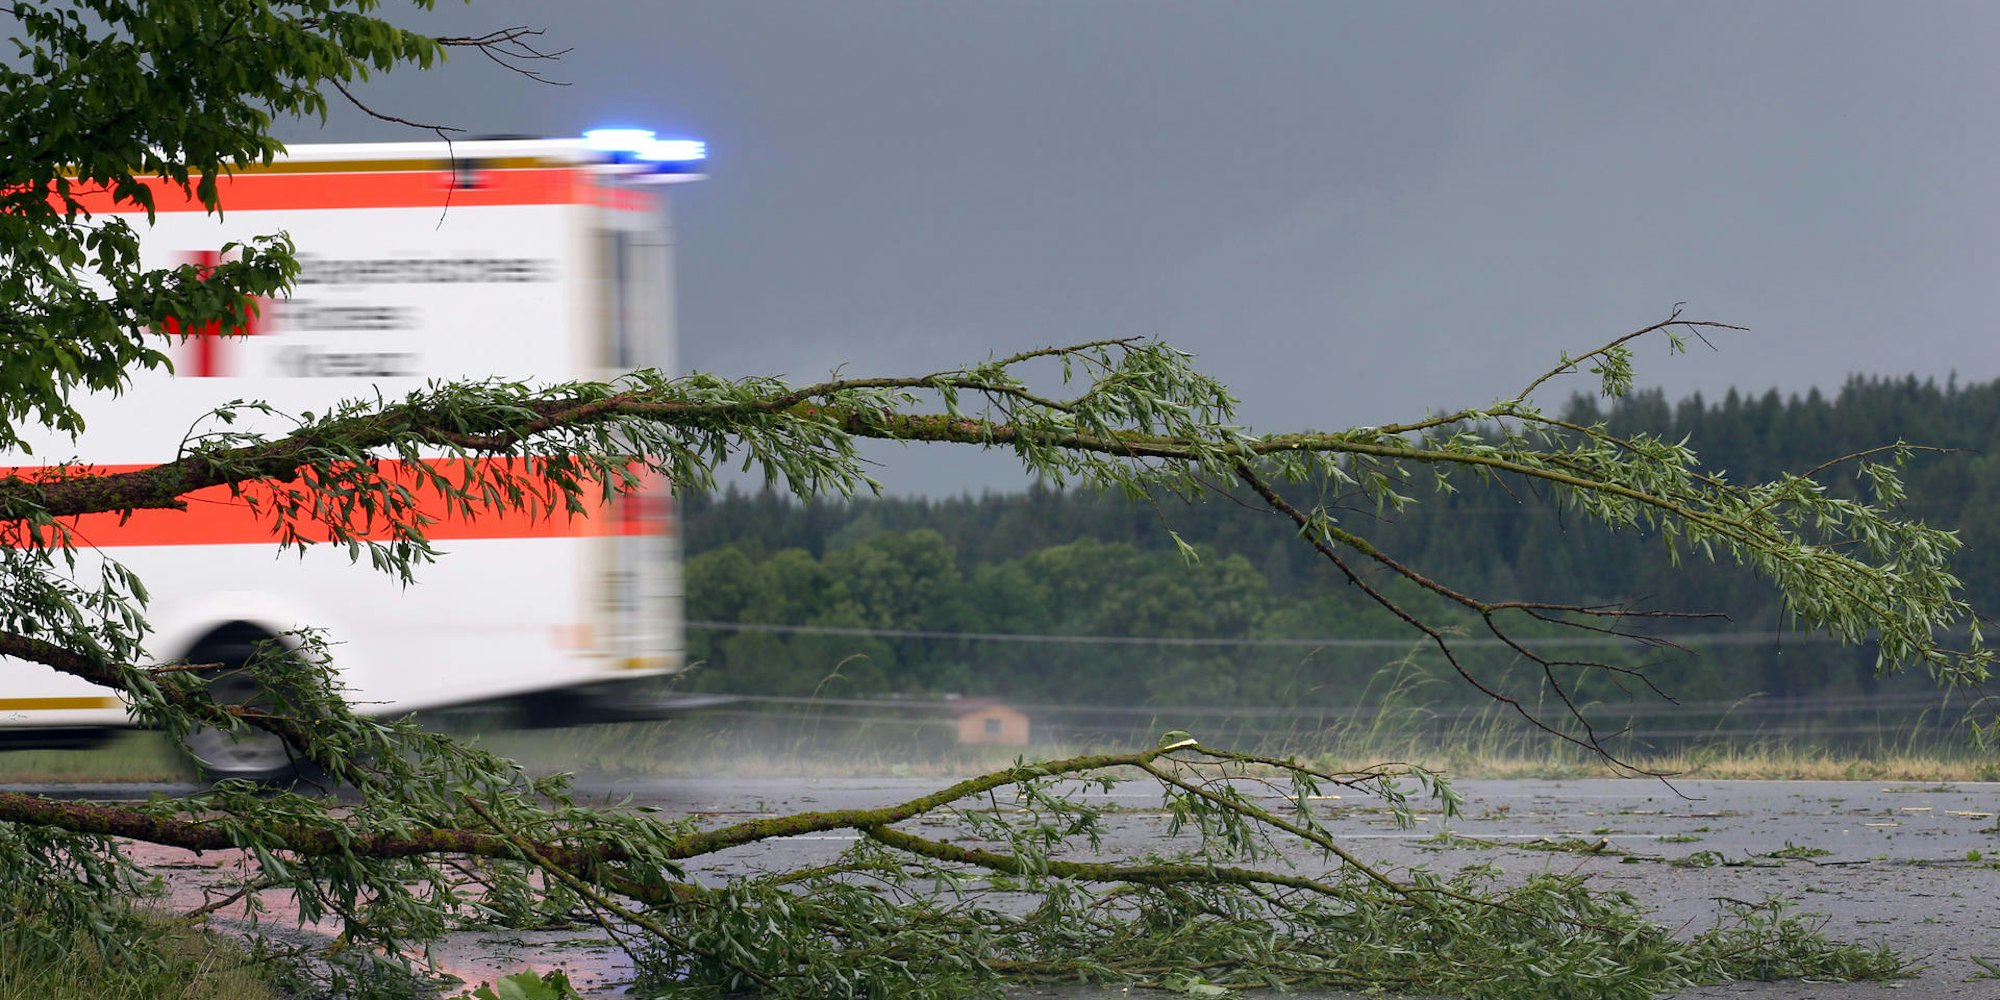 Rettungswagen Baum Symbolbild